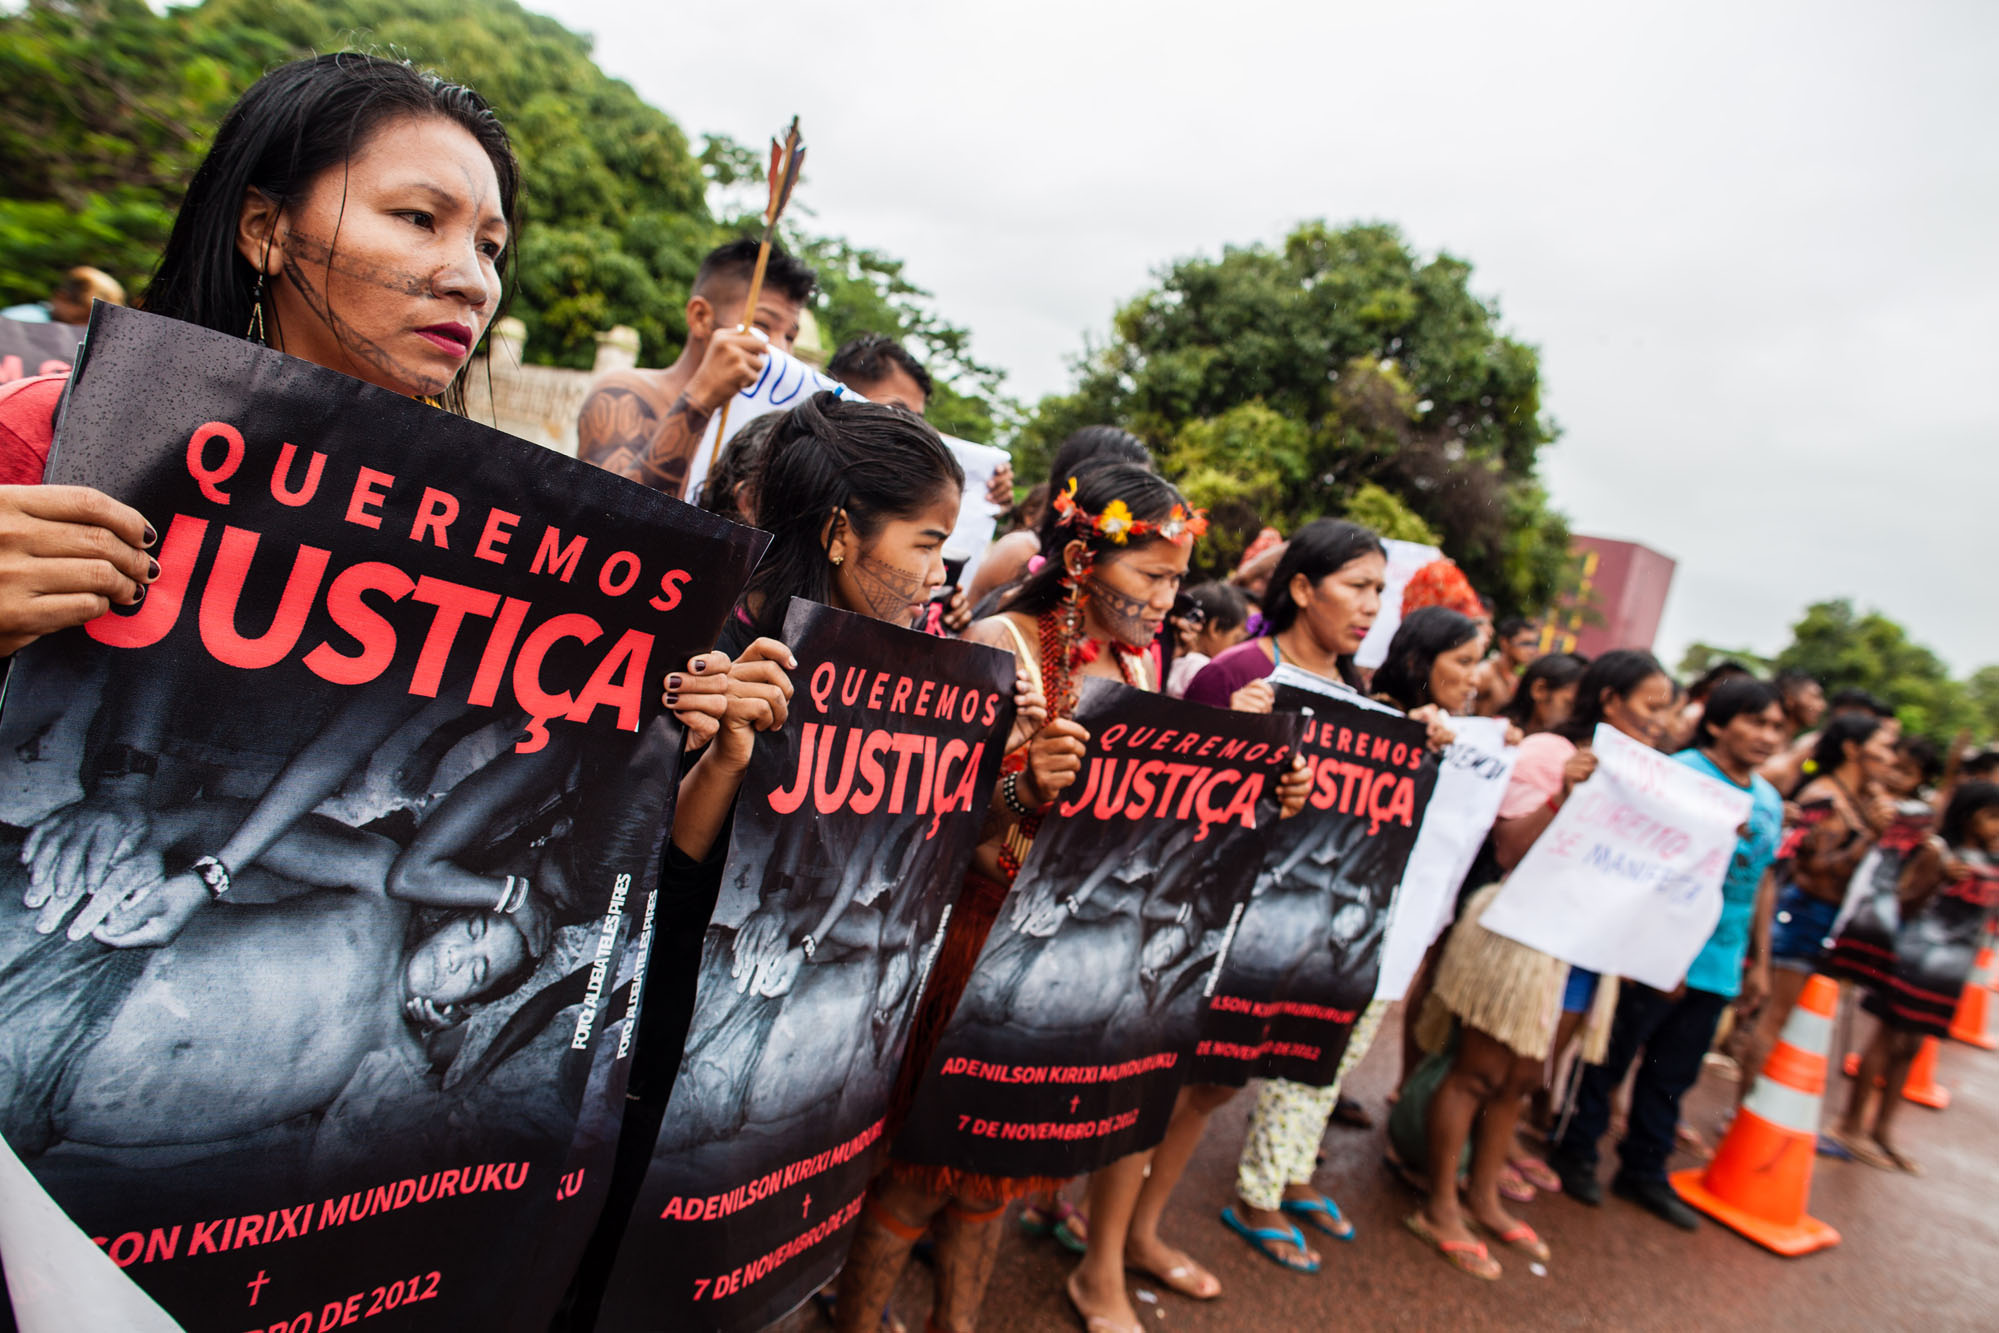 Em audiência sobre a morte de Adenilson Munduruku, delegado da PF nega autoria do crime; indígenas clamam por Justiça